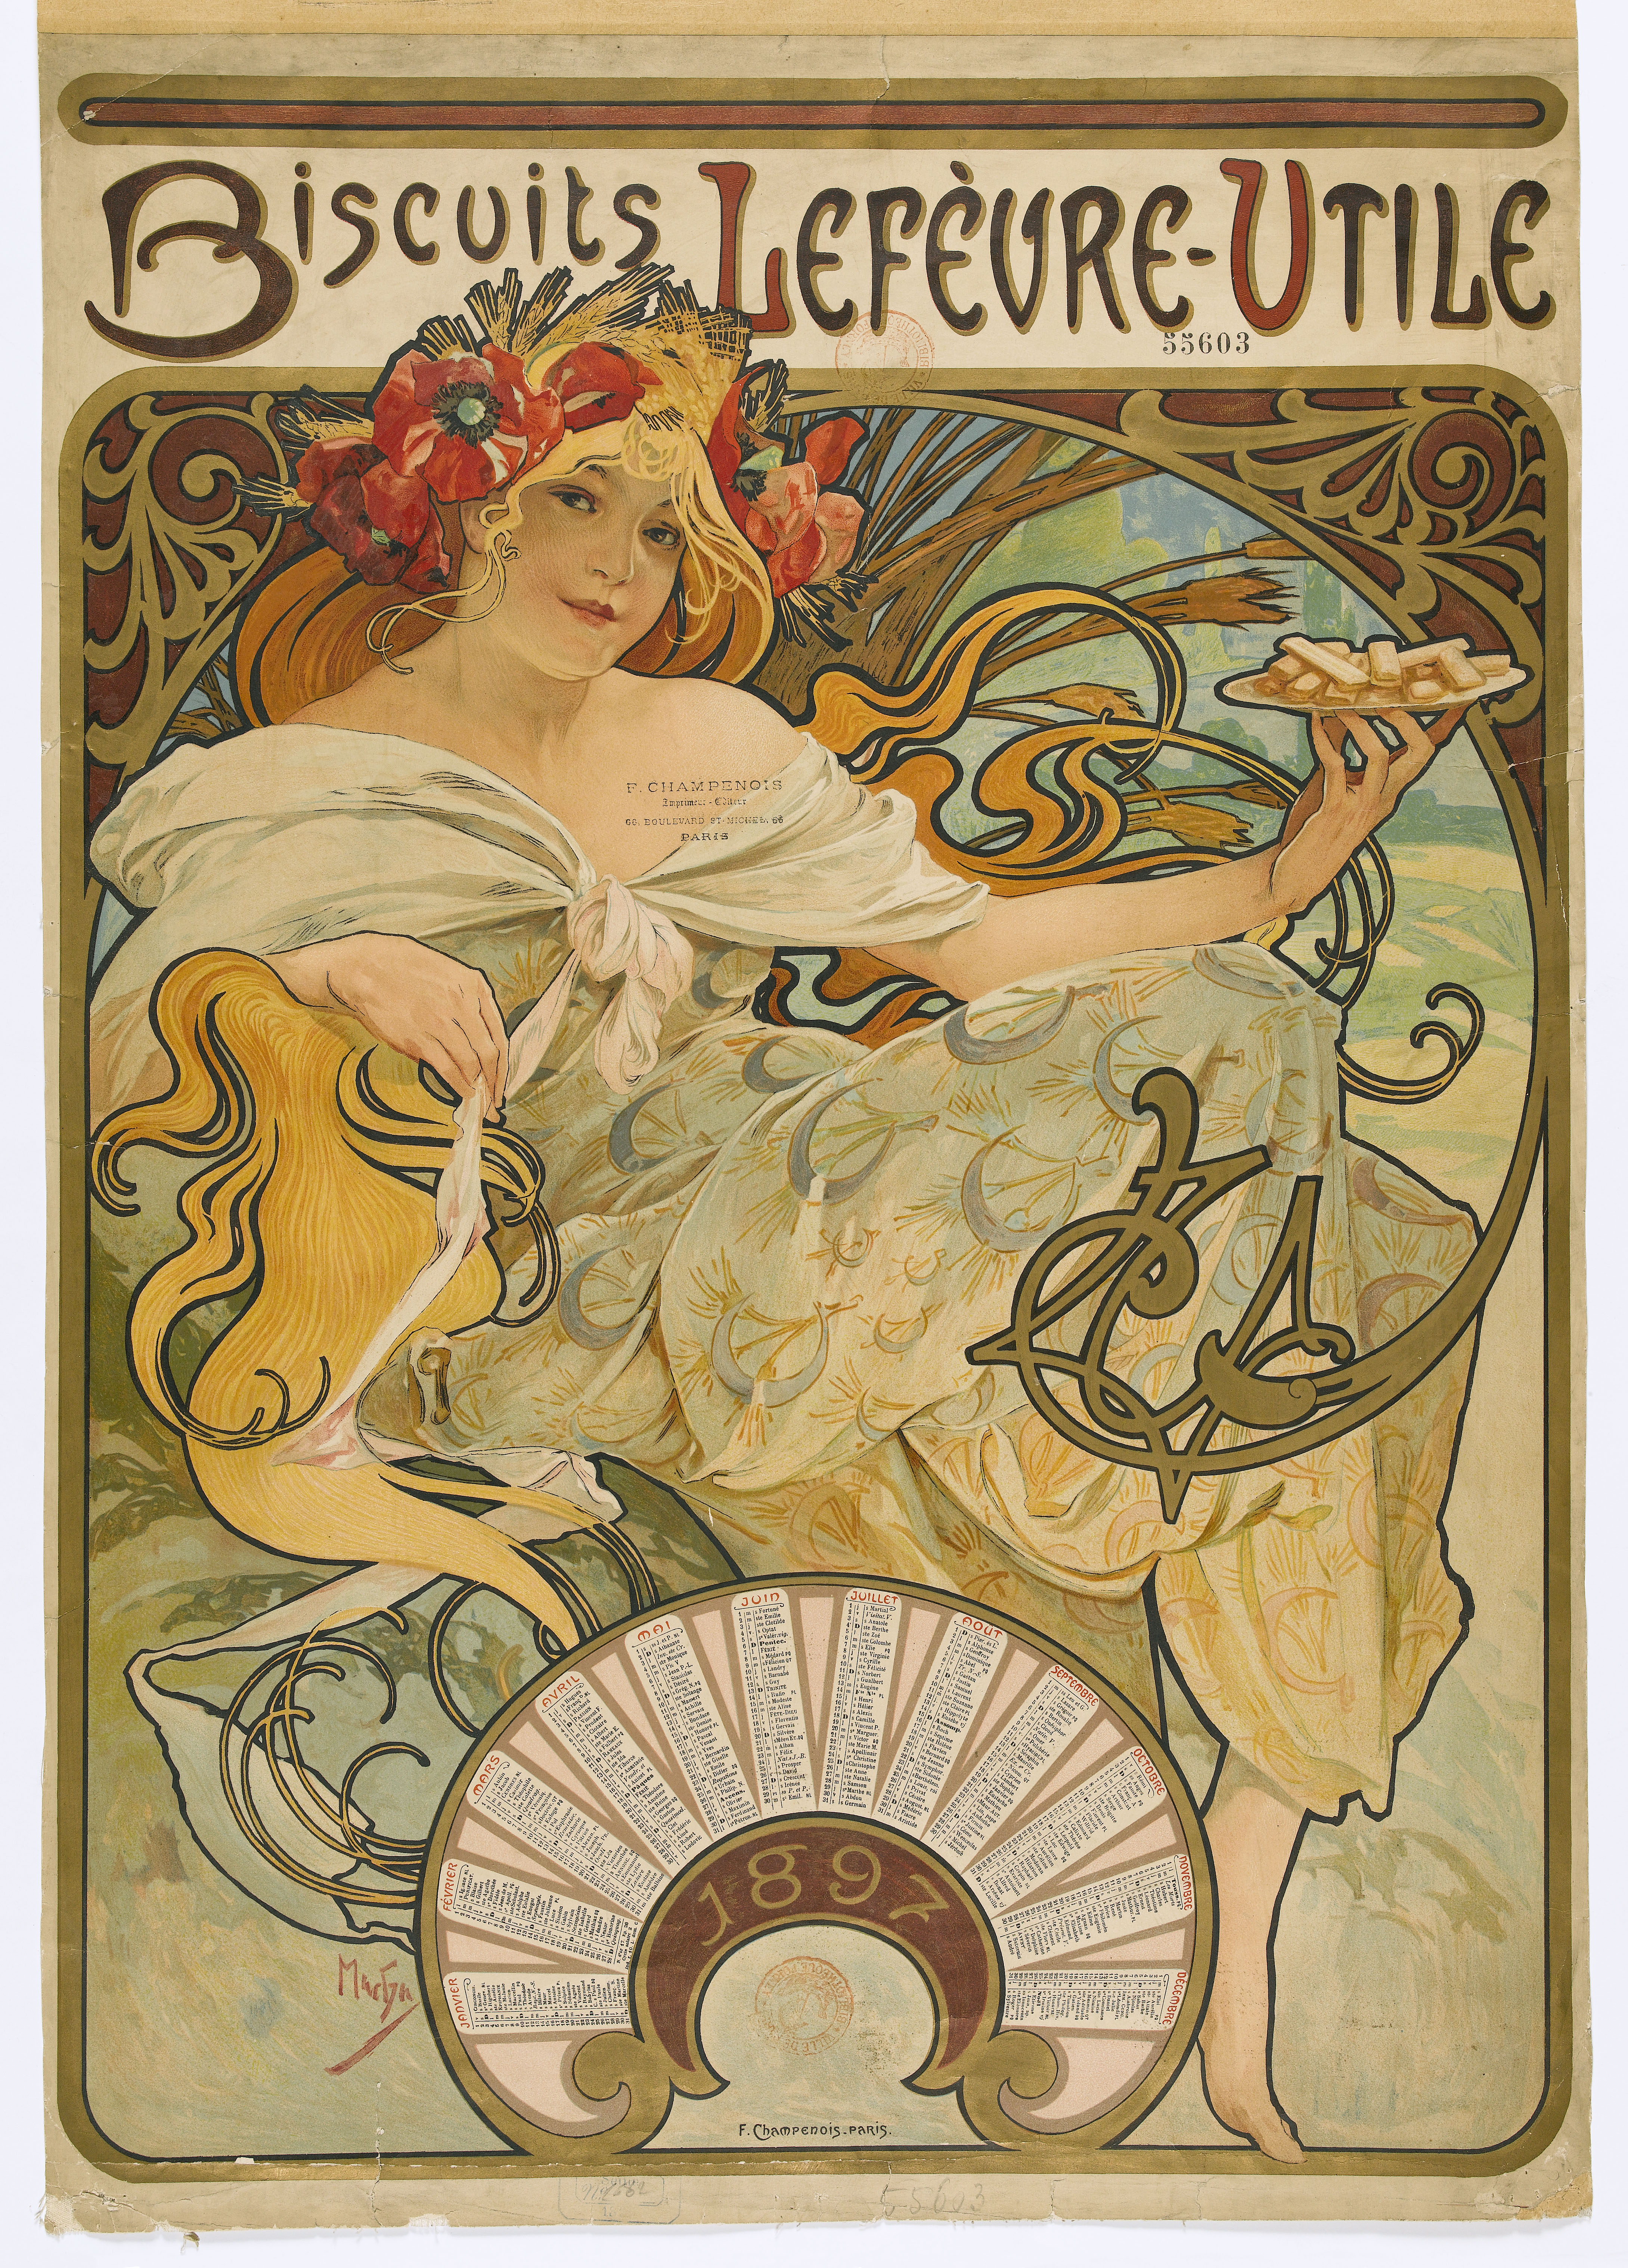 Affiche représentant une femme à longue chevelure blonde, coiffée d'une couronne de coquelicots et de blés, tenant une assiette de biscuits dans sa main gauche.